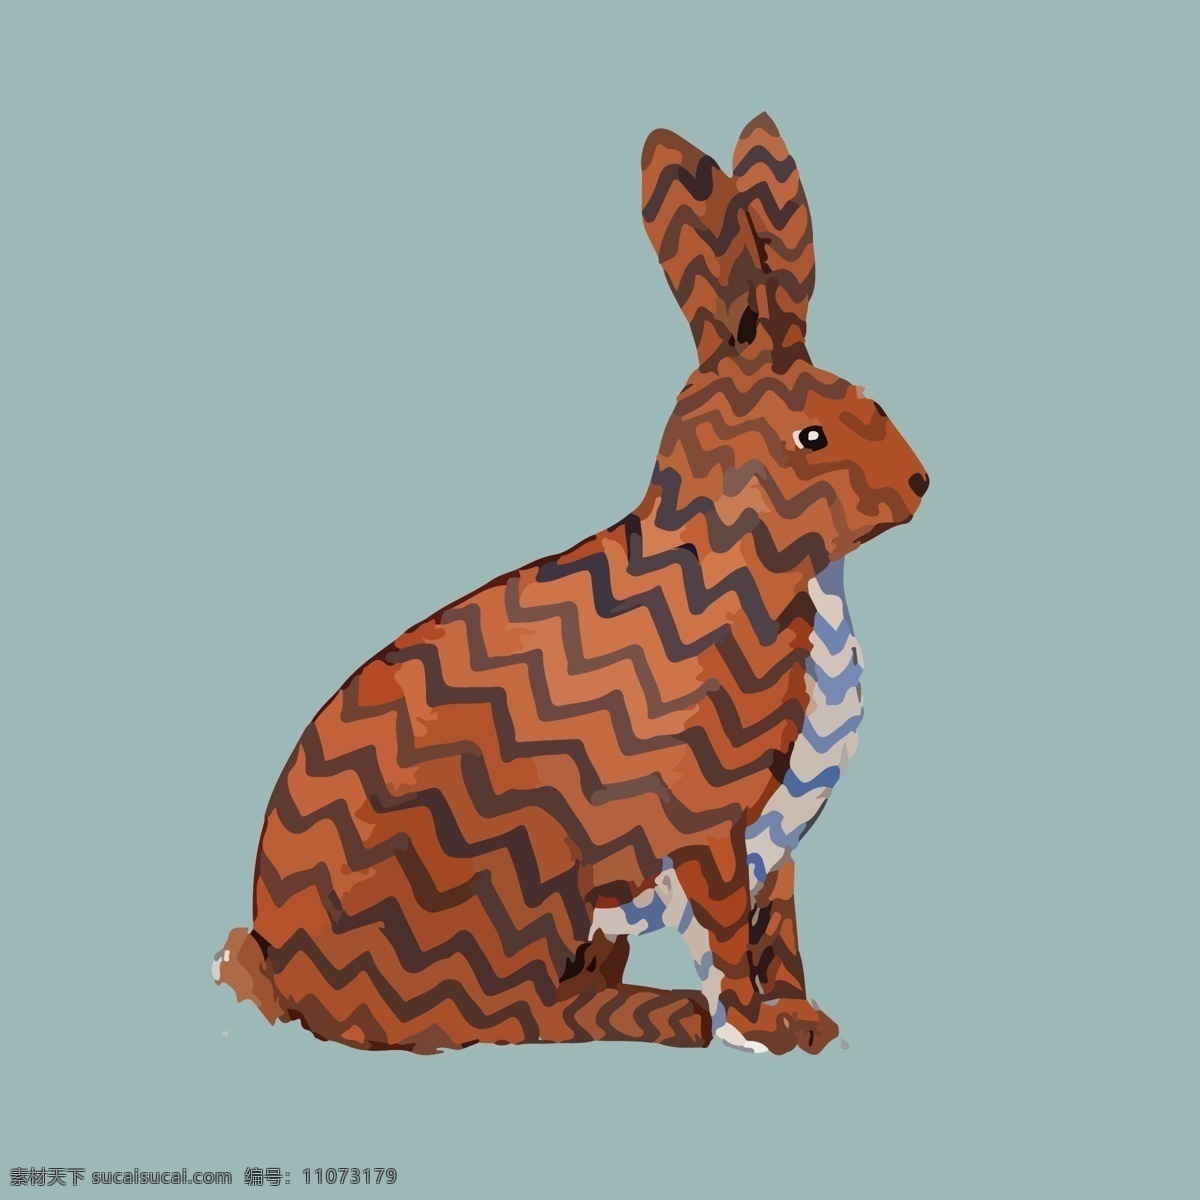 印花 矢量图 动物 服装图案 卡通 兔子 印花矢量图 花纹填充 面料图库 服装设计 图案花型